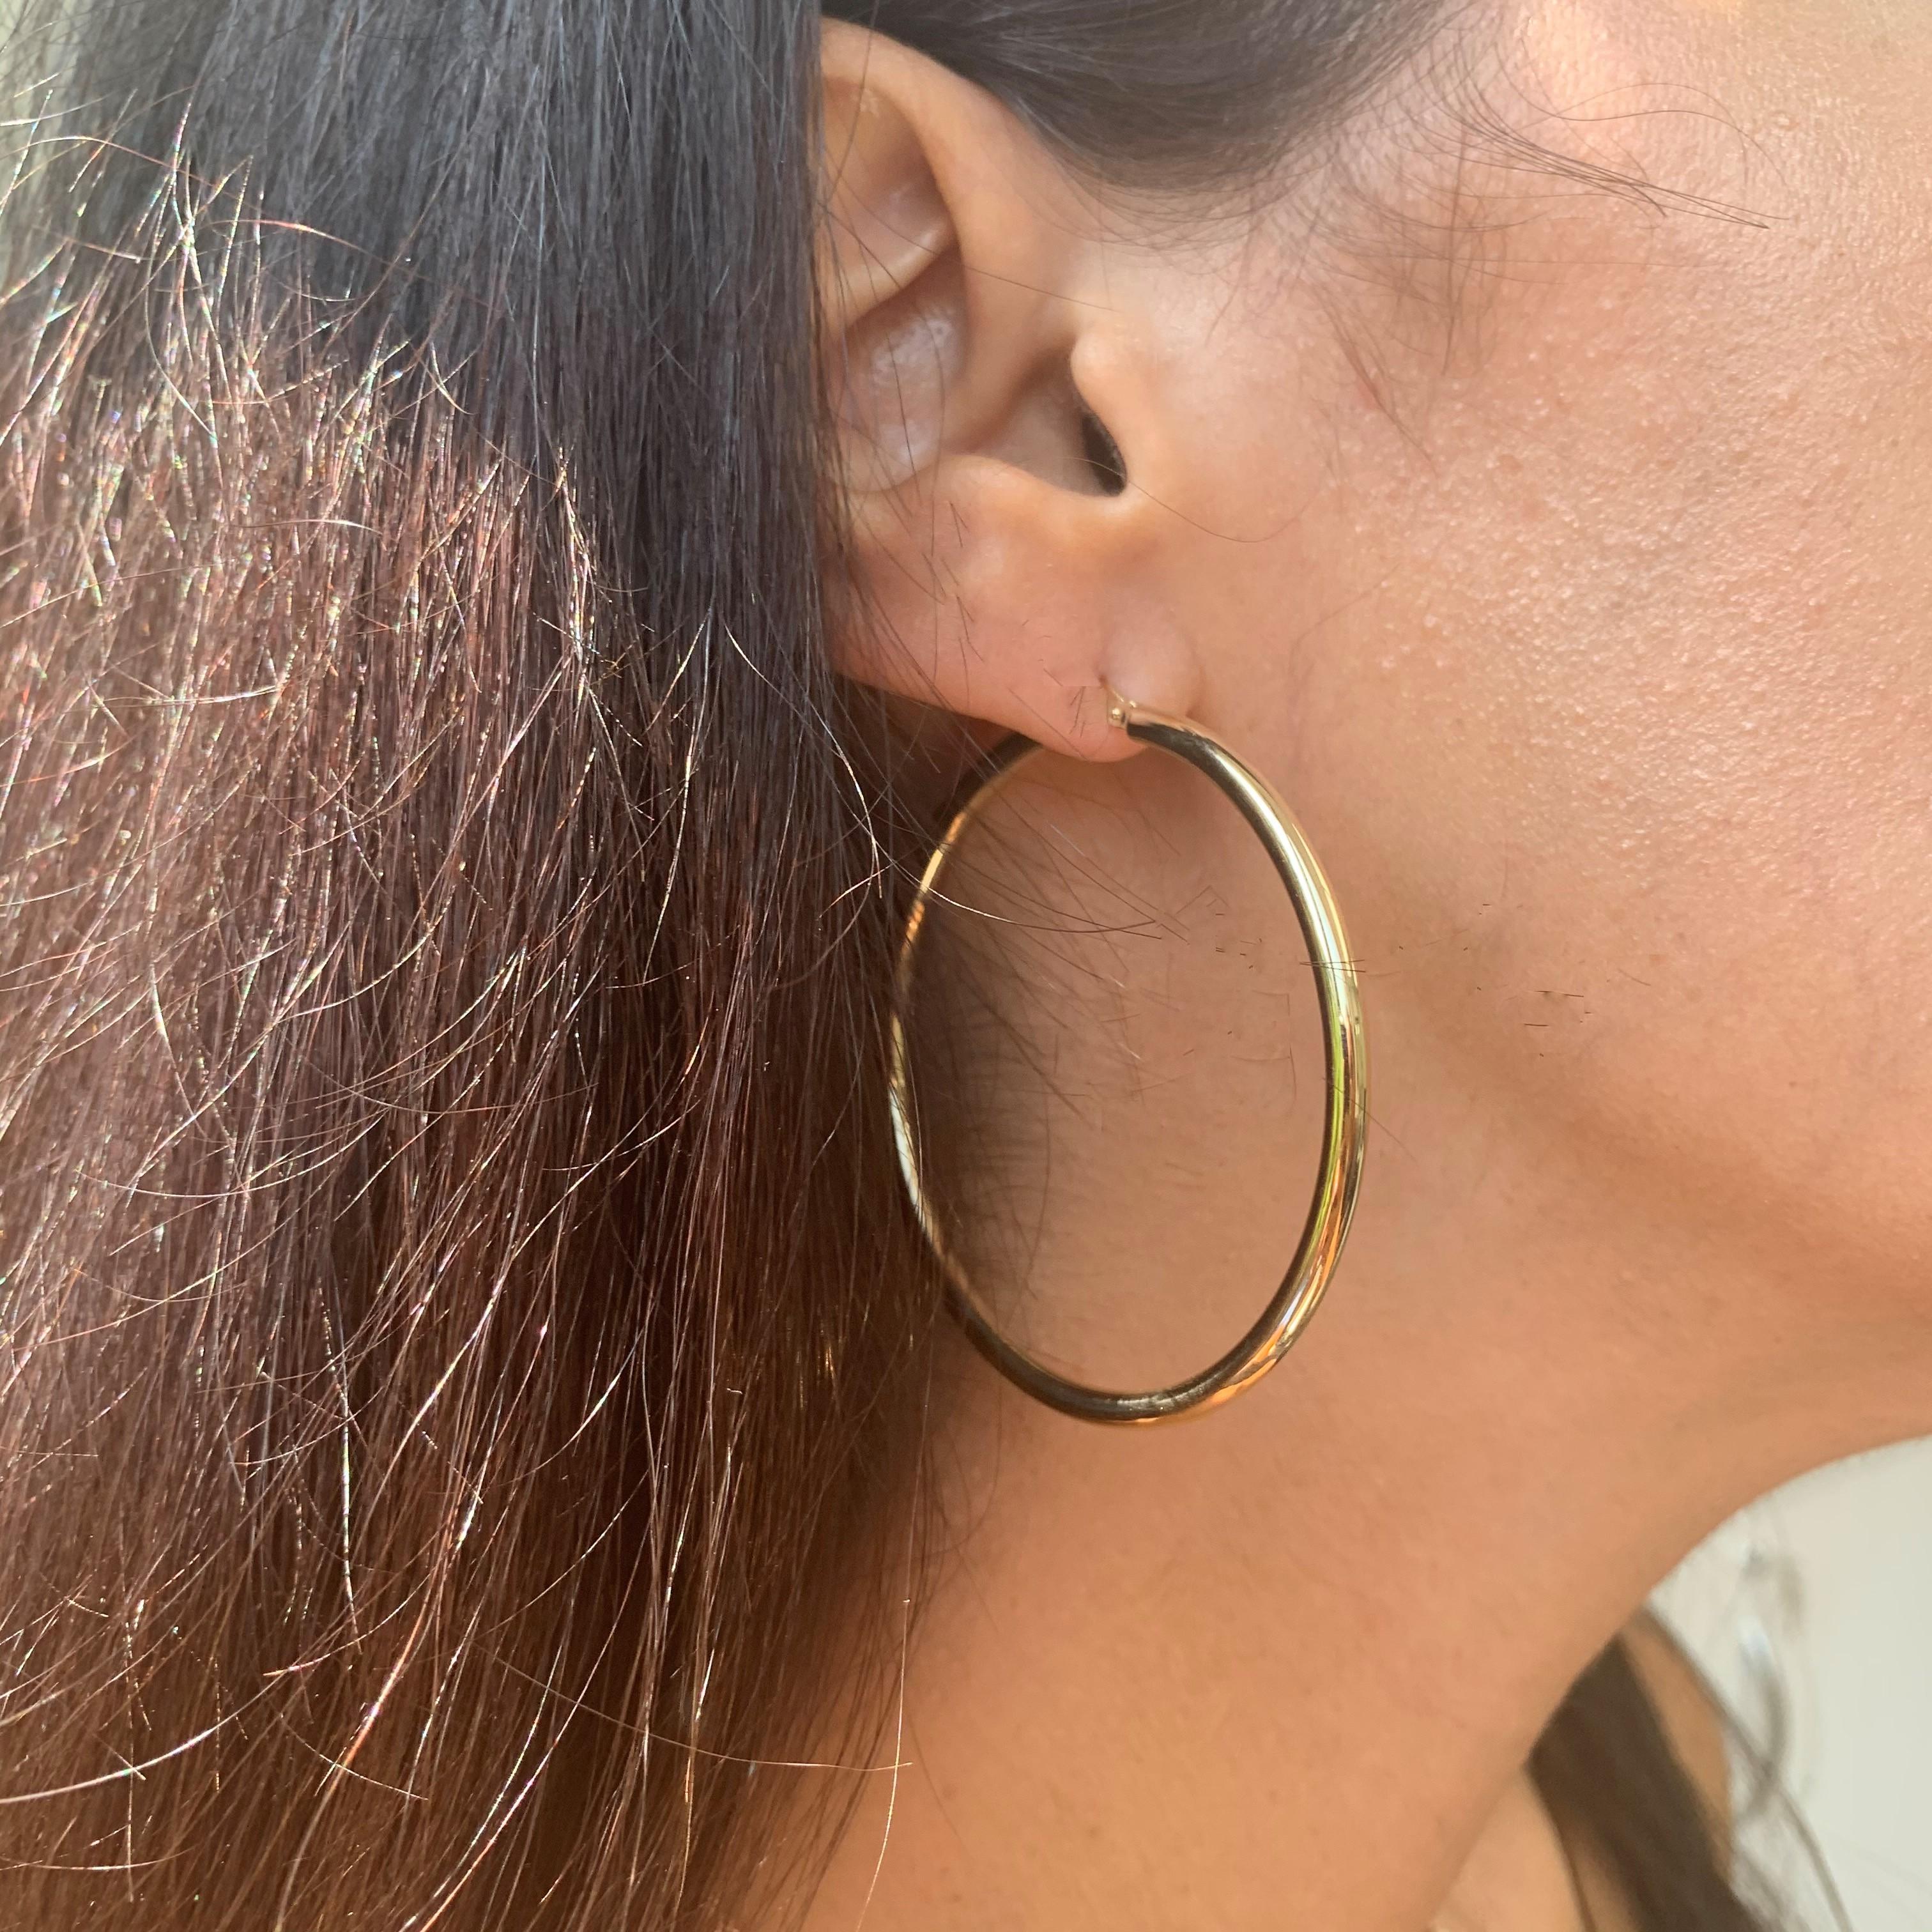 Ces élégantes boucles d'oreilles en or jaune 14 carats ajouteront une touche de glamour à votre look ! Les boucles d'oreilles mesurent 3 X 50 MM. 
Fabriqué en Italie
Diamètre de 2 pouces 
Boîte cadeau incluse
Expédition sous 1 à 2 jours ouvrables